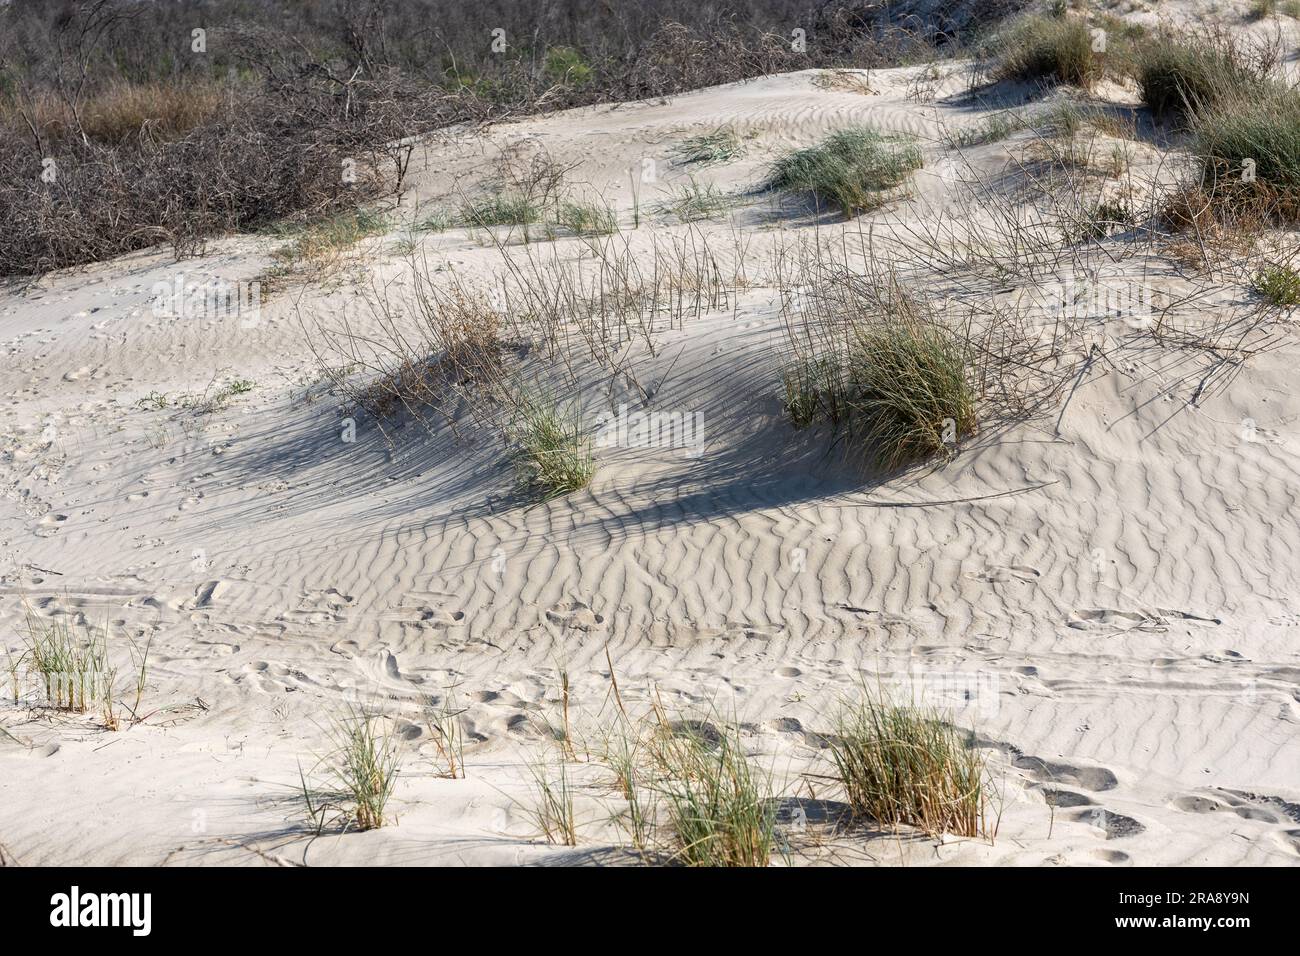 Die Sanddünen in der Nähe des Mittelmeers sind mit üppigem Gras geschmückt und weisen faszinierende Spuren von Tier- und Insektenleben auf, die in den weichen Sand geätzt wurden. Stockfoto